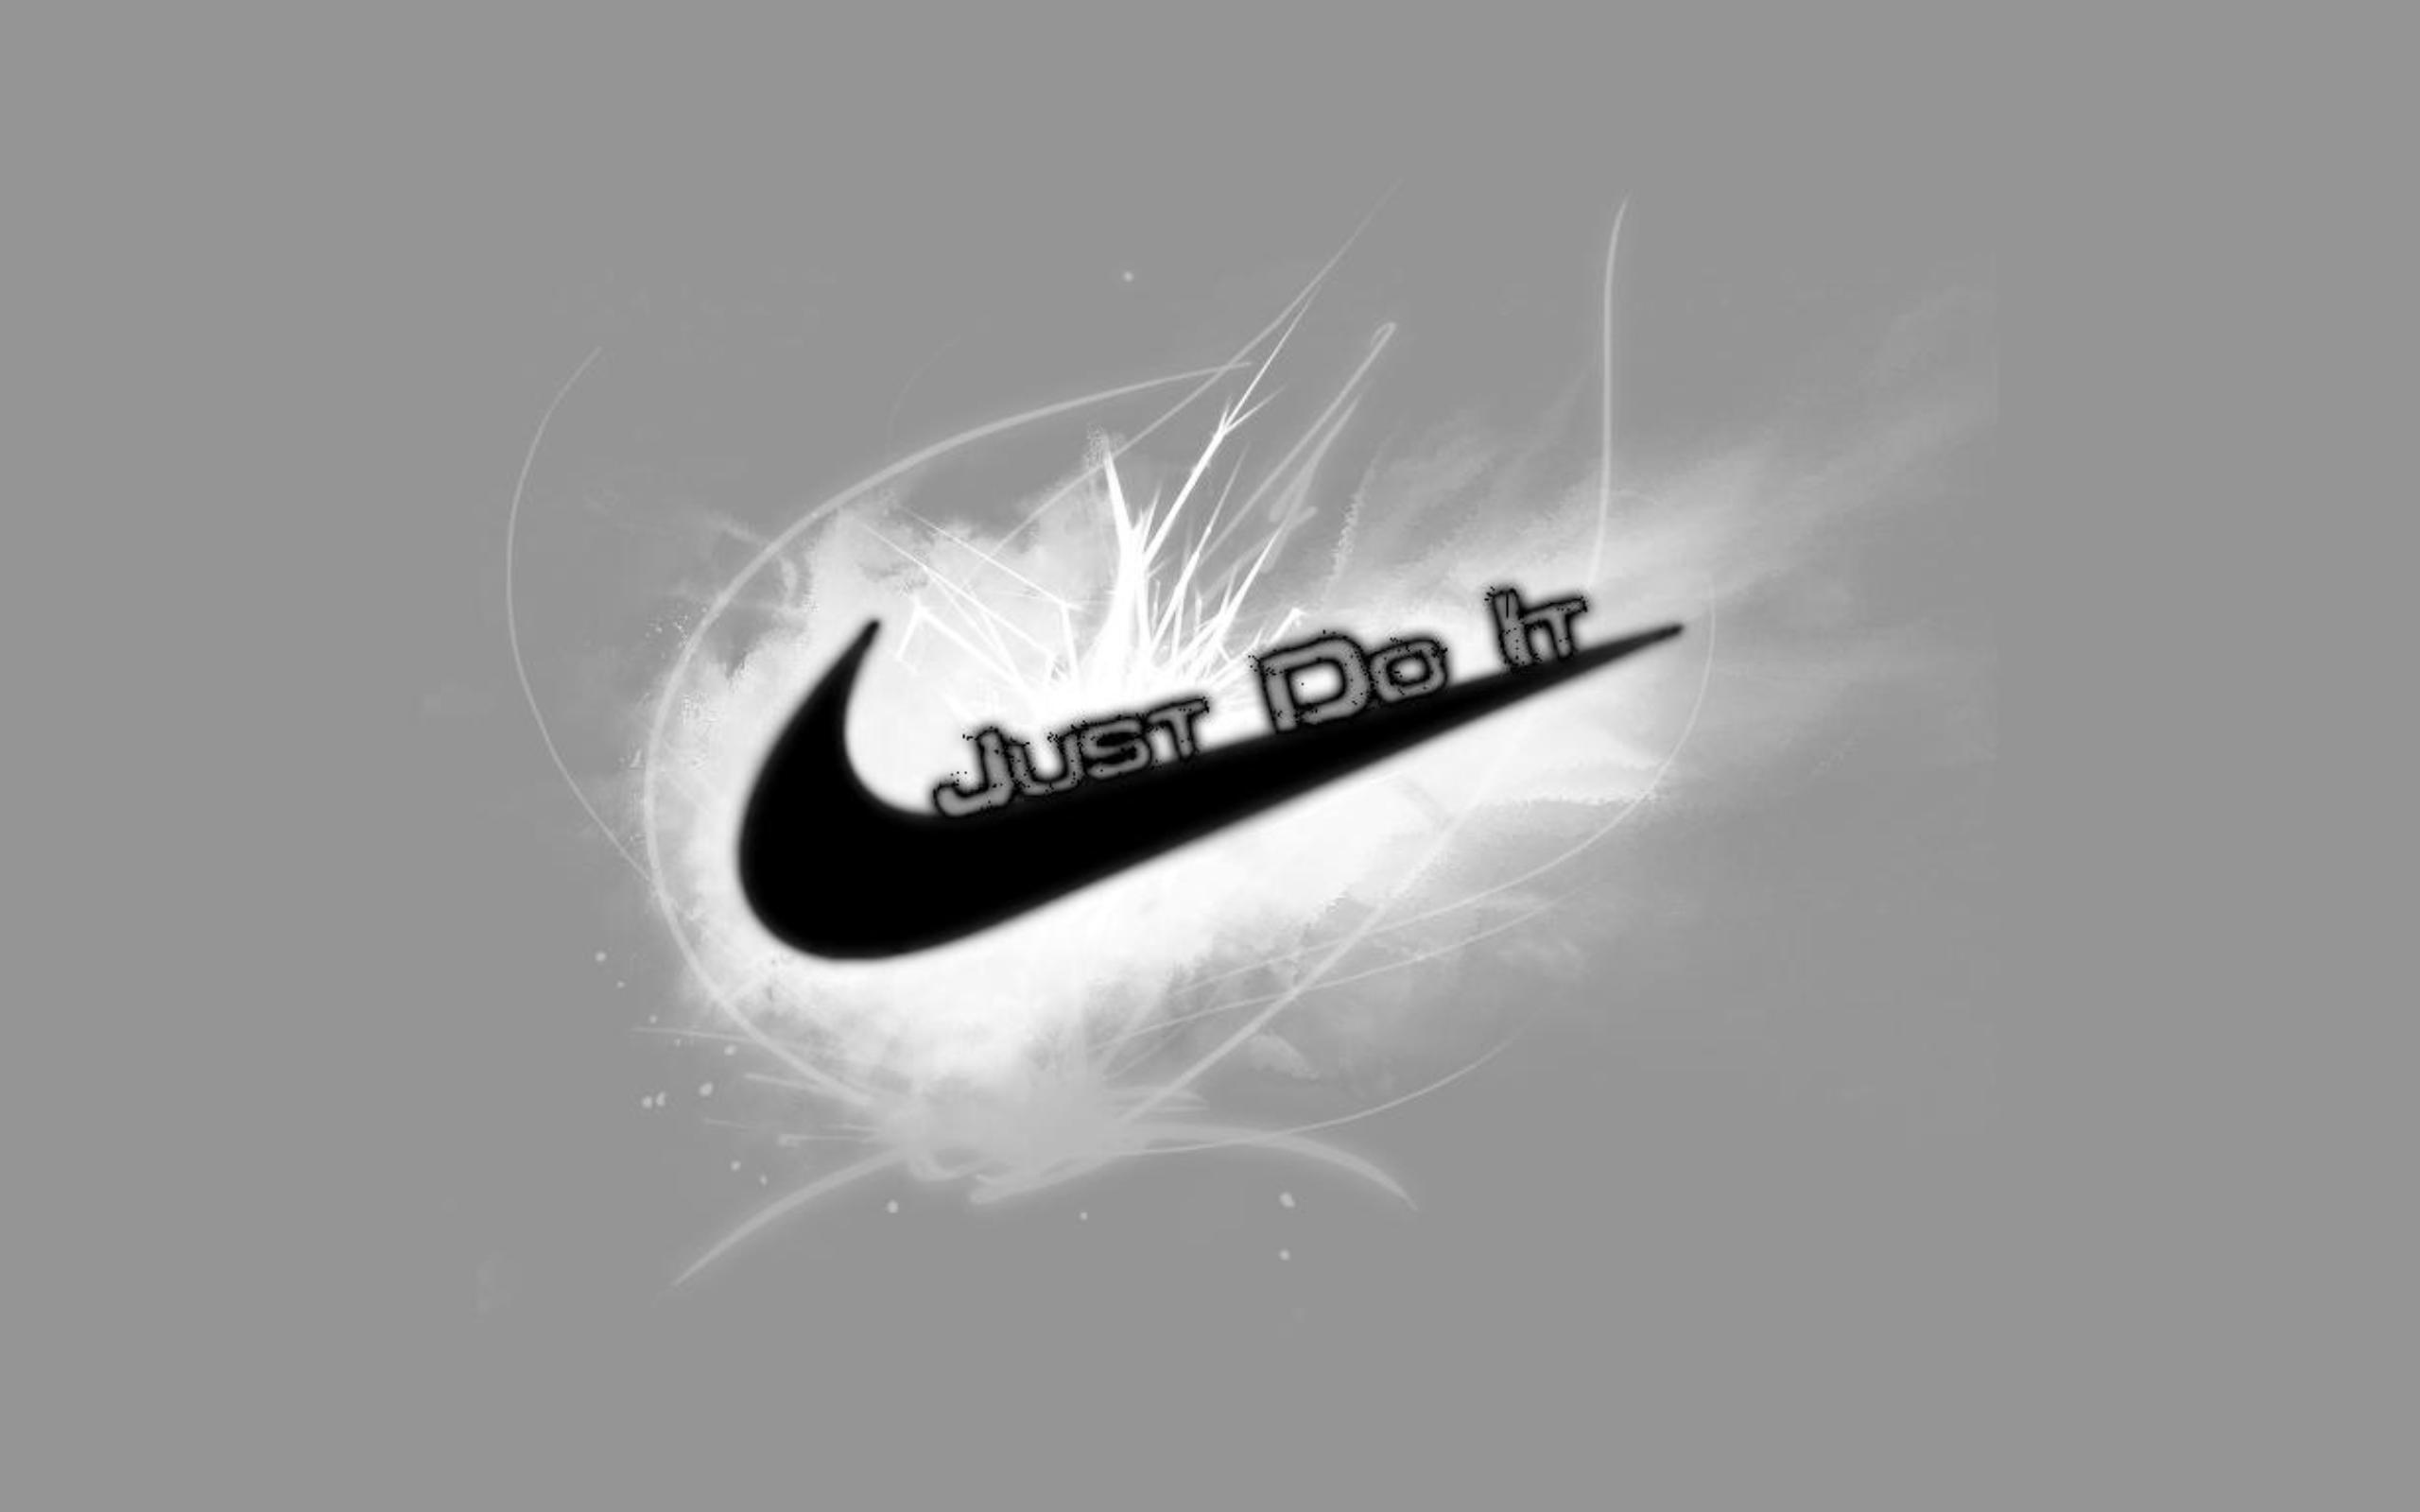 Nike Logo Wallpapers HD free download 